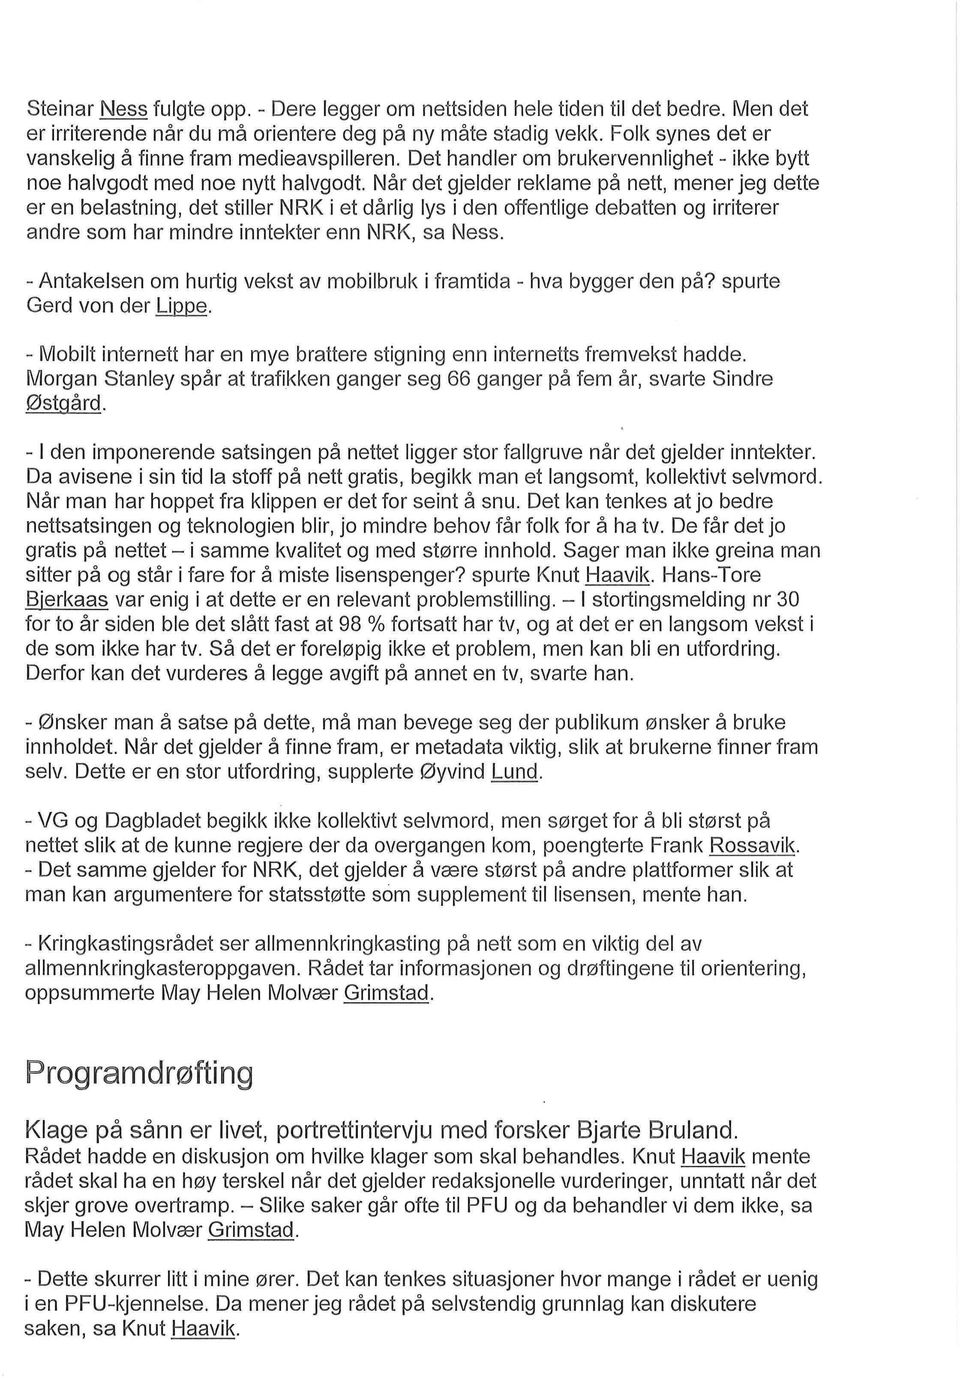 Nar det gjelder reklame pa nett, mener jeg dette er en belastning, det stiller NRK i et darlig lys i den offentlige debatten og irriterer andre som har mindre inntekter enn NRK, sa Ness.